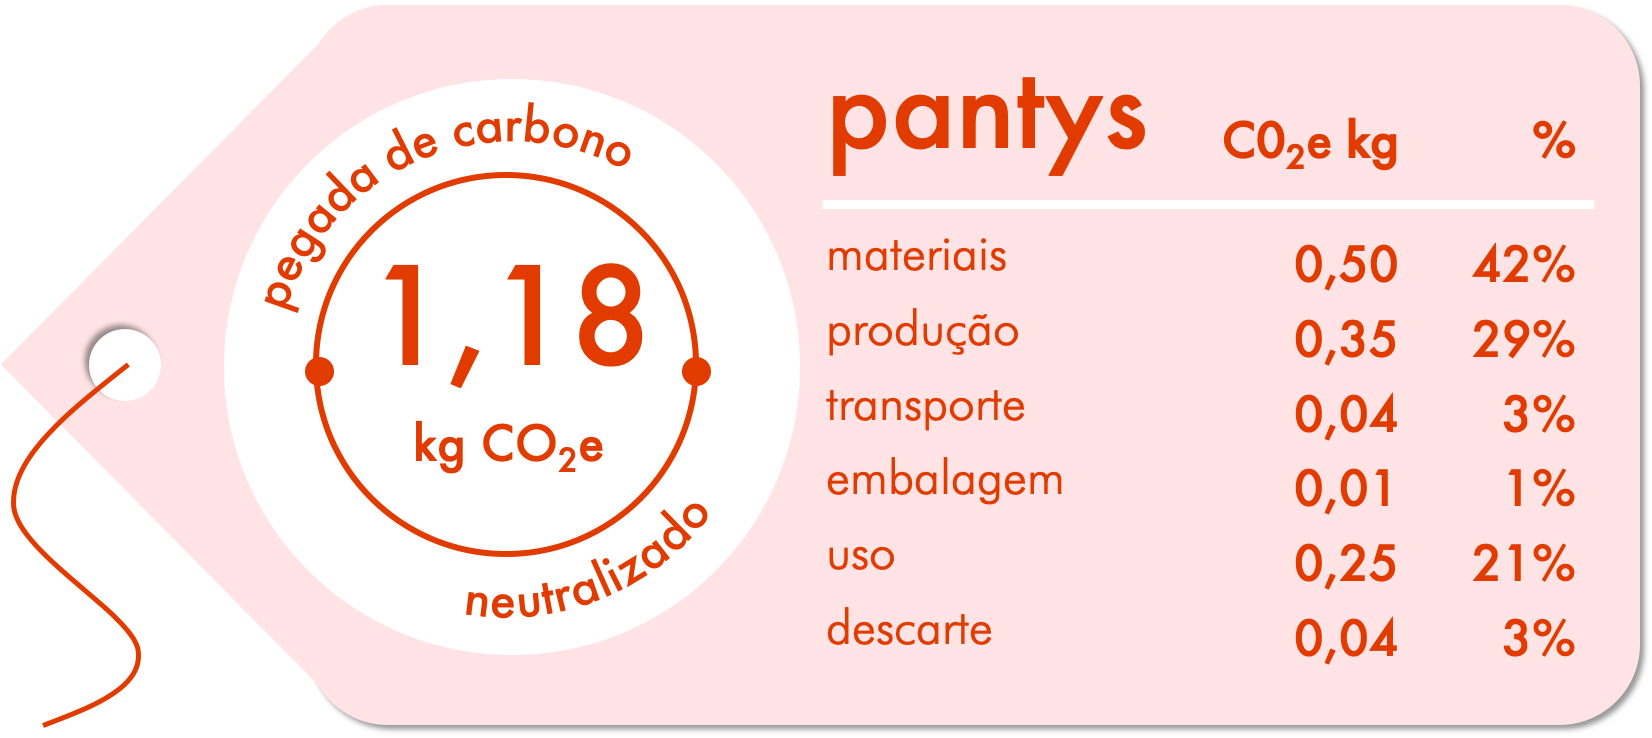 Imagem imitando uma tag escrita pegada de carbono neutralizado com informações sobre a pantys